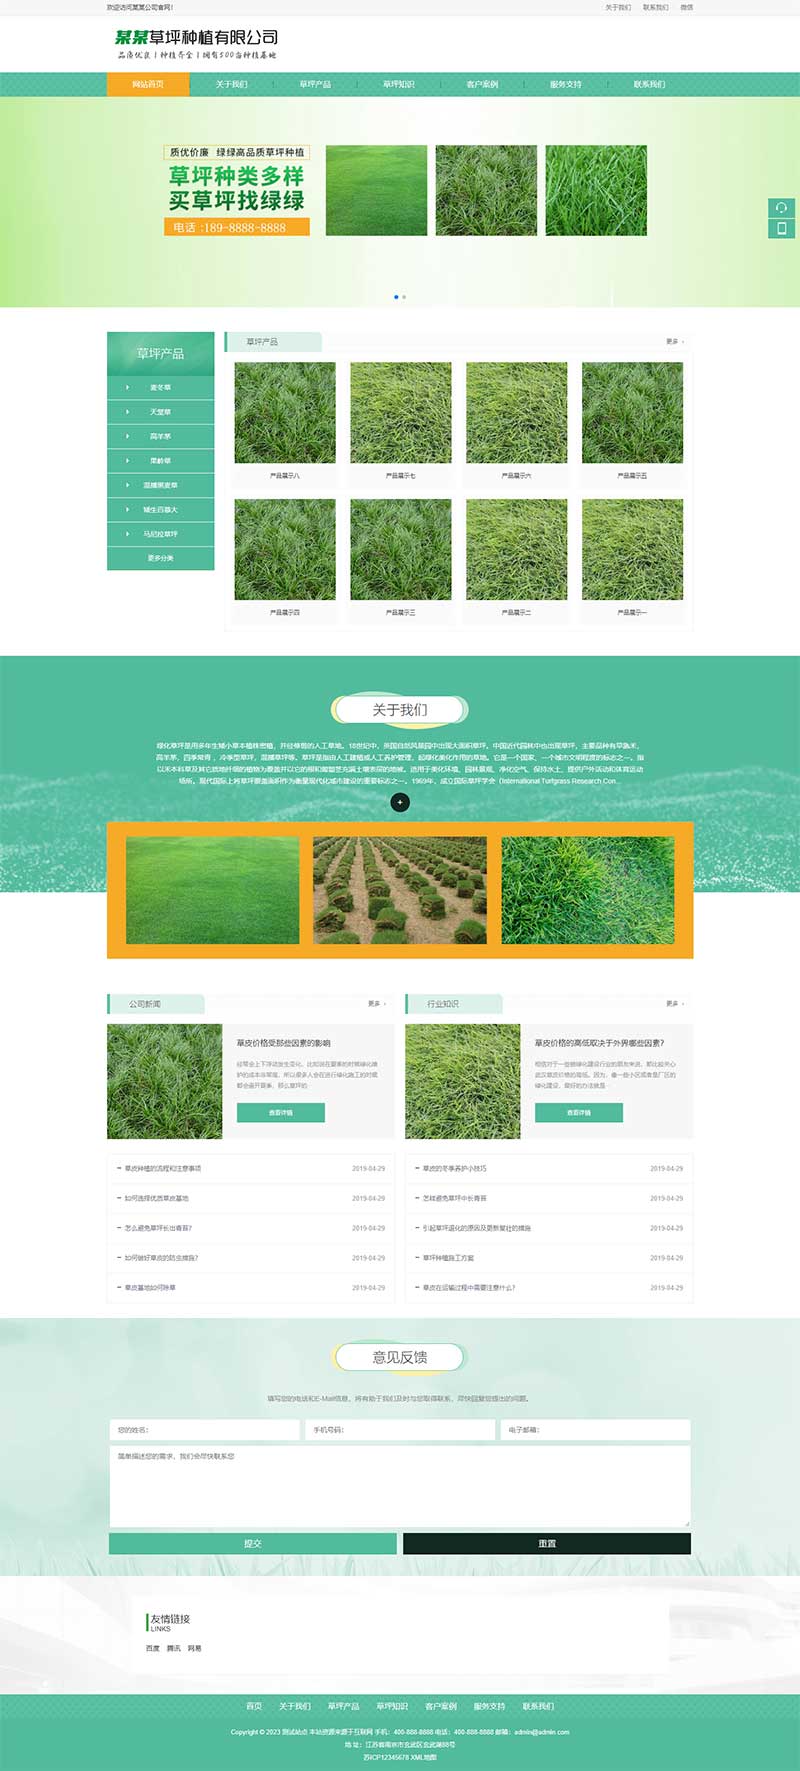 (PC+手机版)草坪园林木苗种植绿化农业网站源码电脑端展示图片